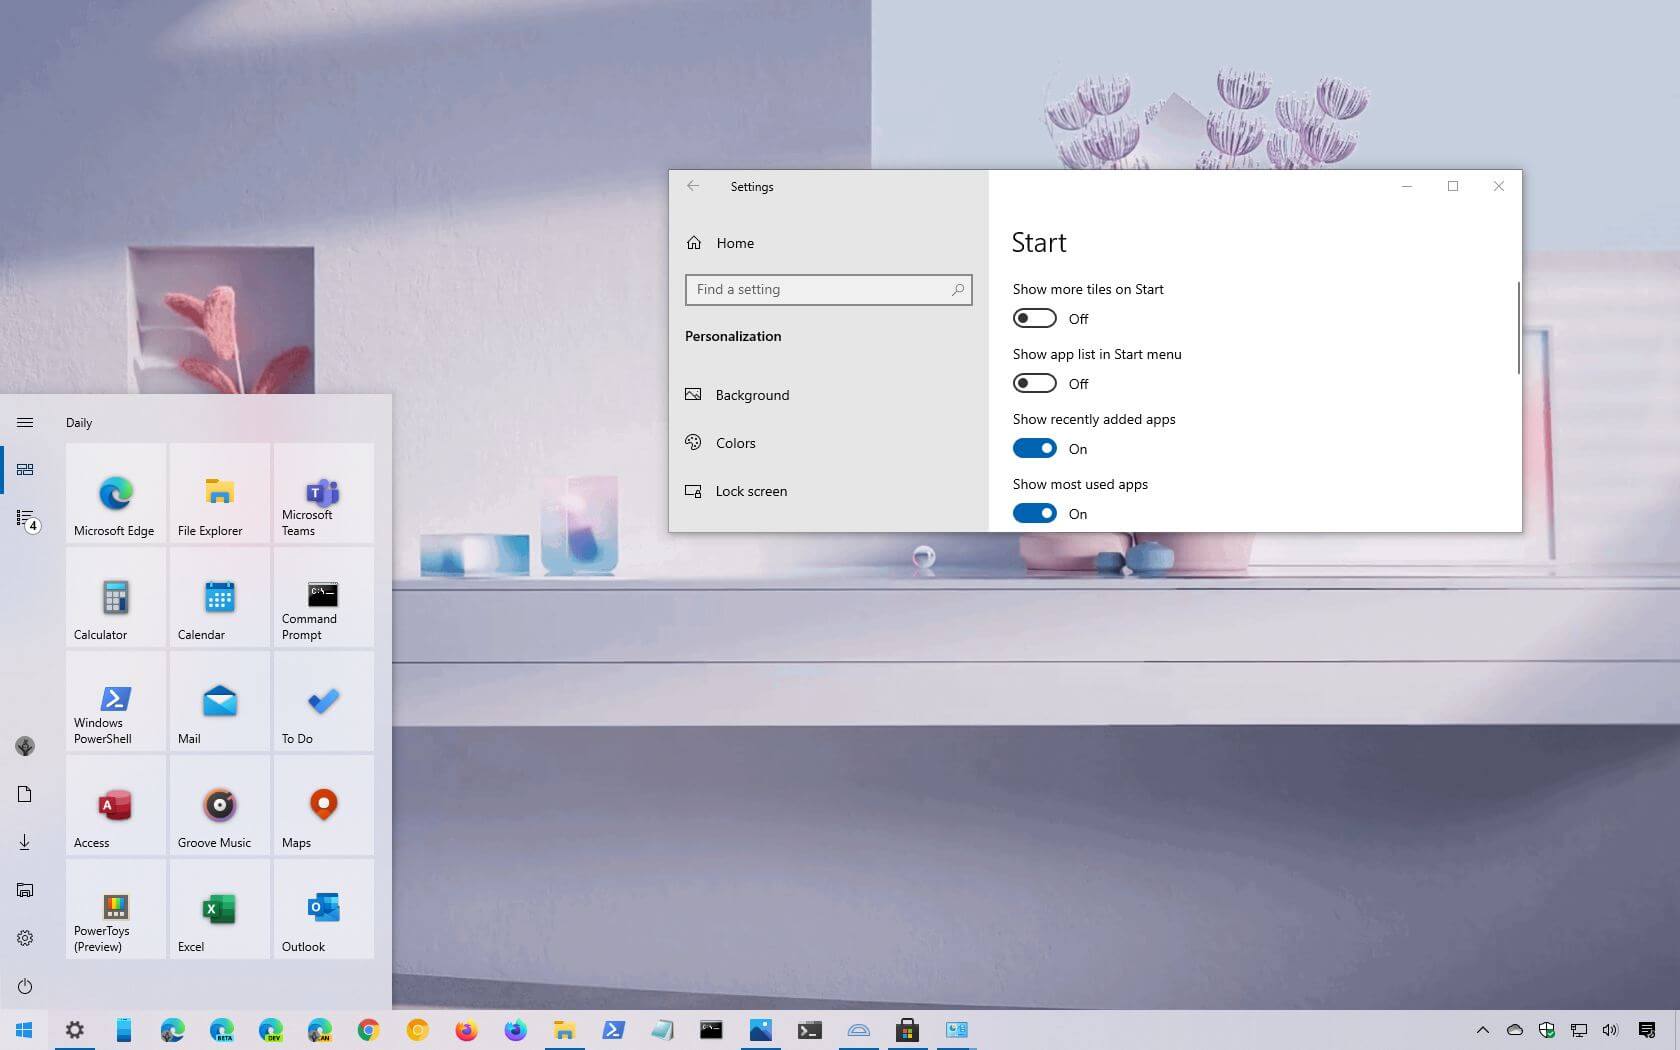 Danh sách ứng dụng trên menu Start của Windows 10 giúp bạn quản lý tất cả những ứng dụng yêu thích của mình dễ dàng hơn bao giờ hết. Với giao diện mới, sắp xếp ứng dụng theo ý thích và tra cứu dễ dàng hơn, không còn chiếm quá nhiều thời gian để tìm kiếm ứng dụng yêu thích nữa đâu! 